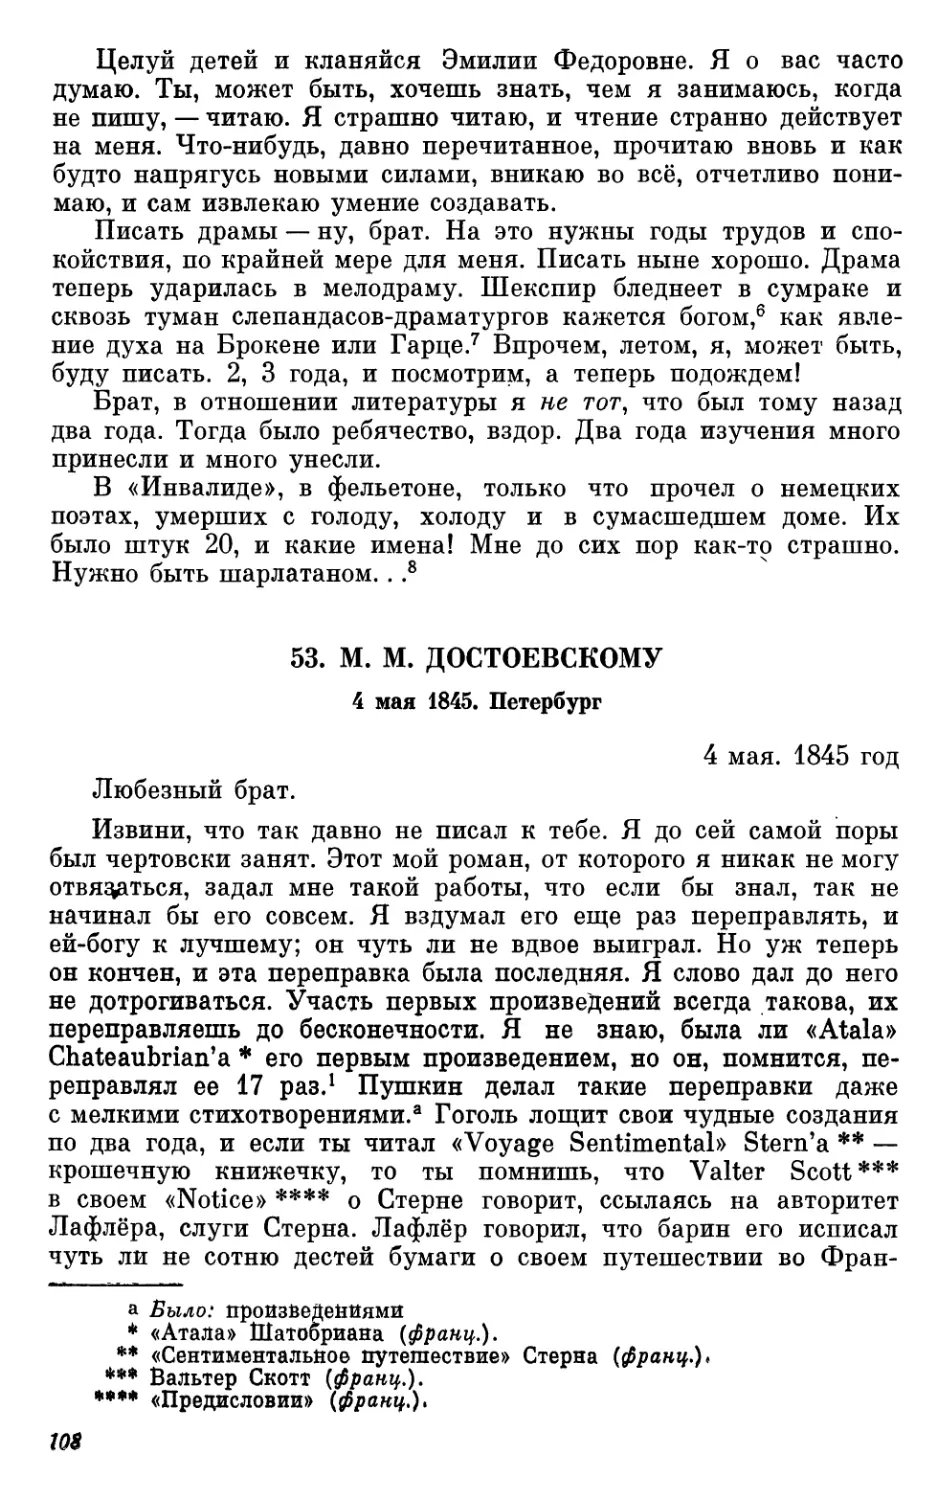 1845
53. М. М. Достоевскому. 4 мая